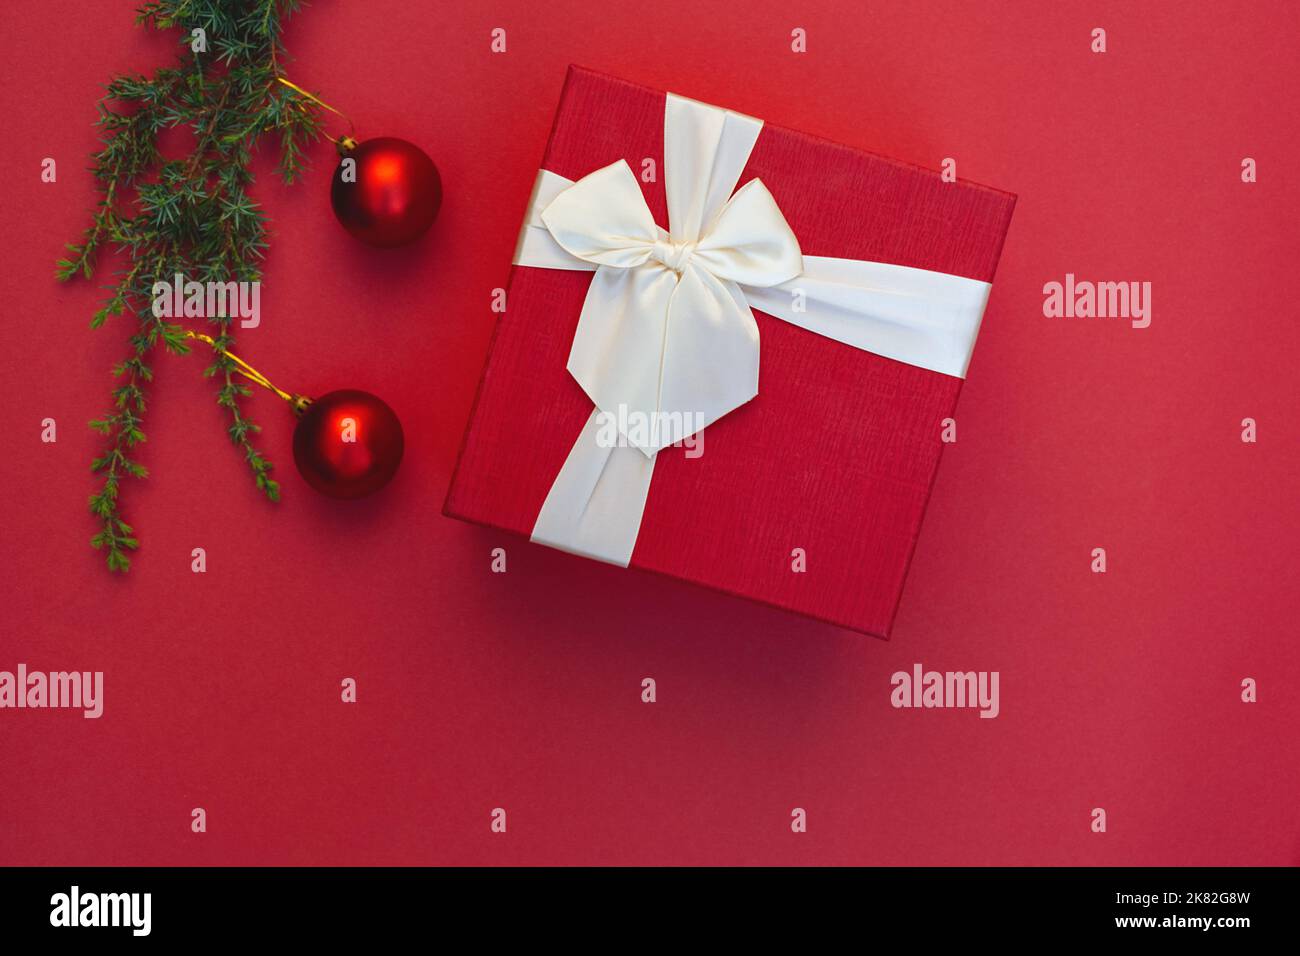 Boîte cadeau avec noeud en ruban et décorations de Noël sur branche d'arbre sur fond rouge. Jouets ronds. Style minimaliste. Copier l'espace. Préparation de cadeaux pour les vacances. Vierge pour la publicité Banque D'Images